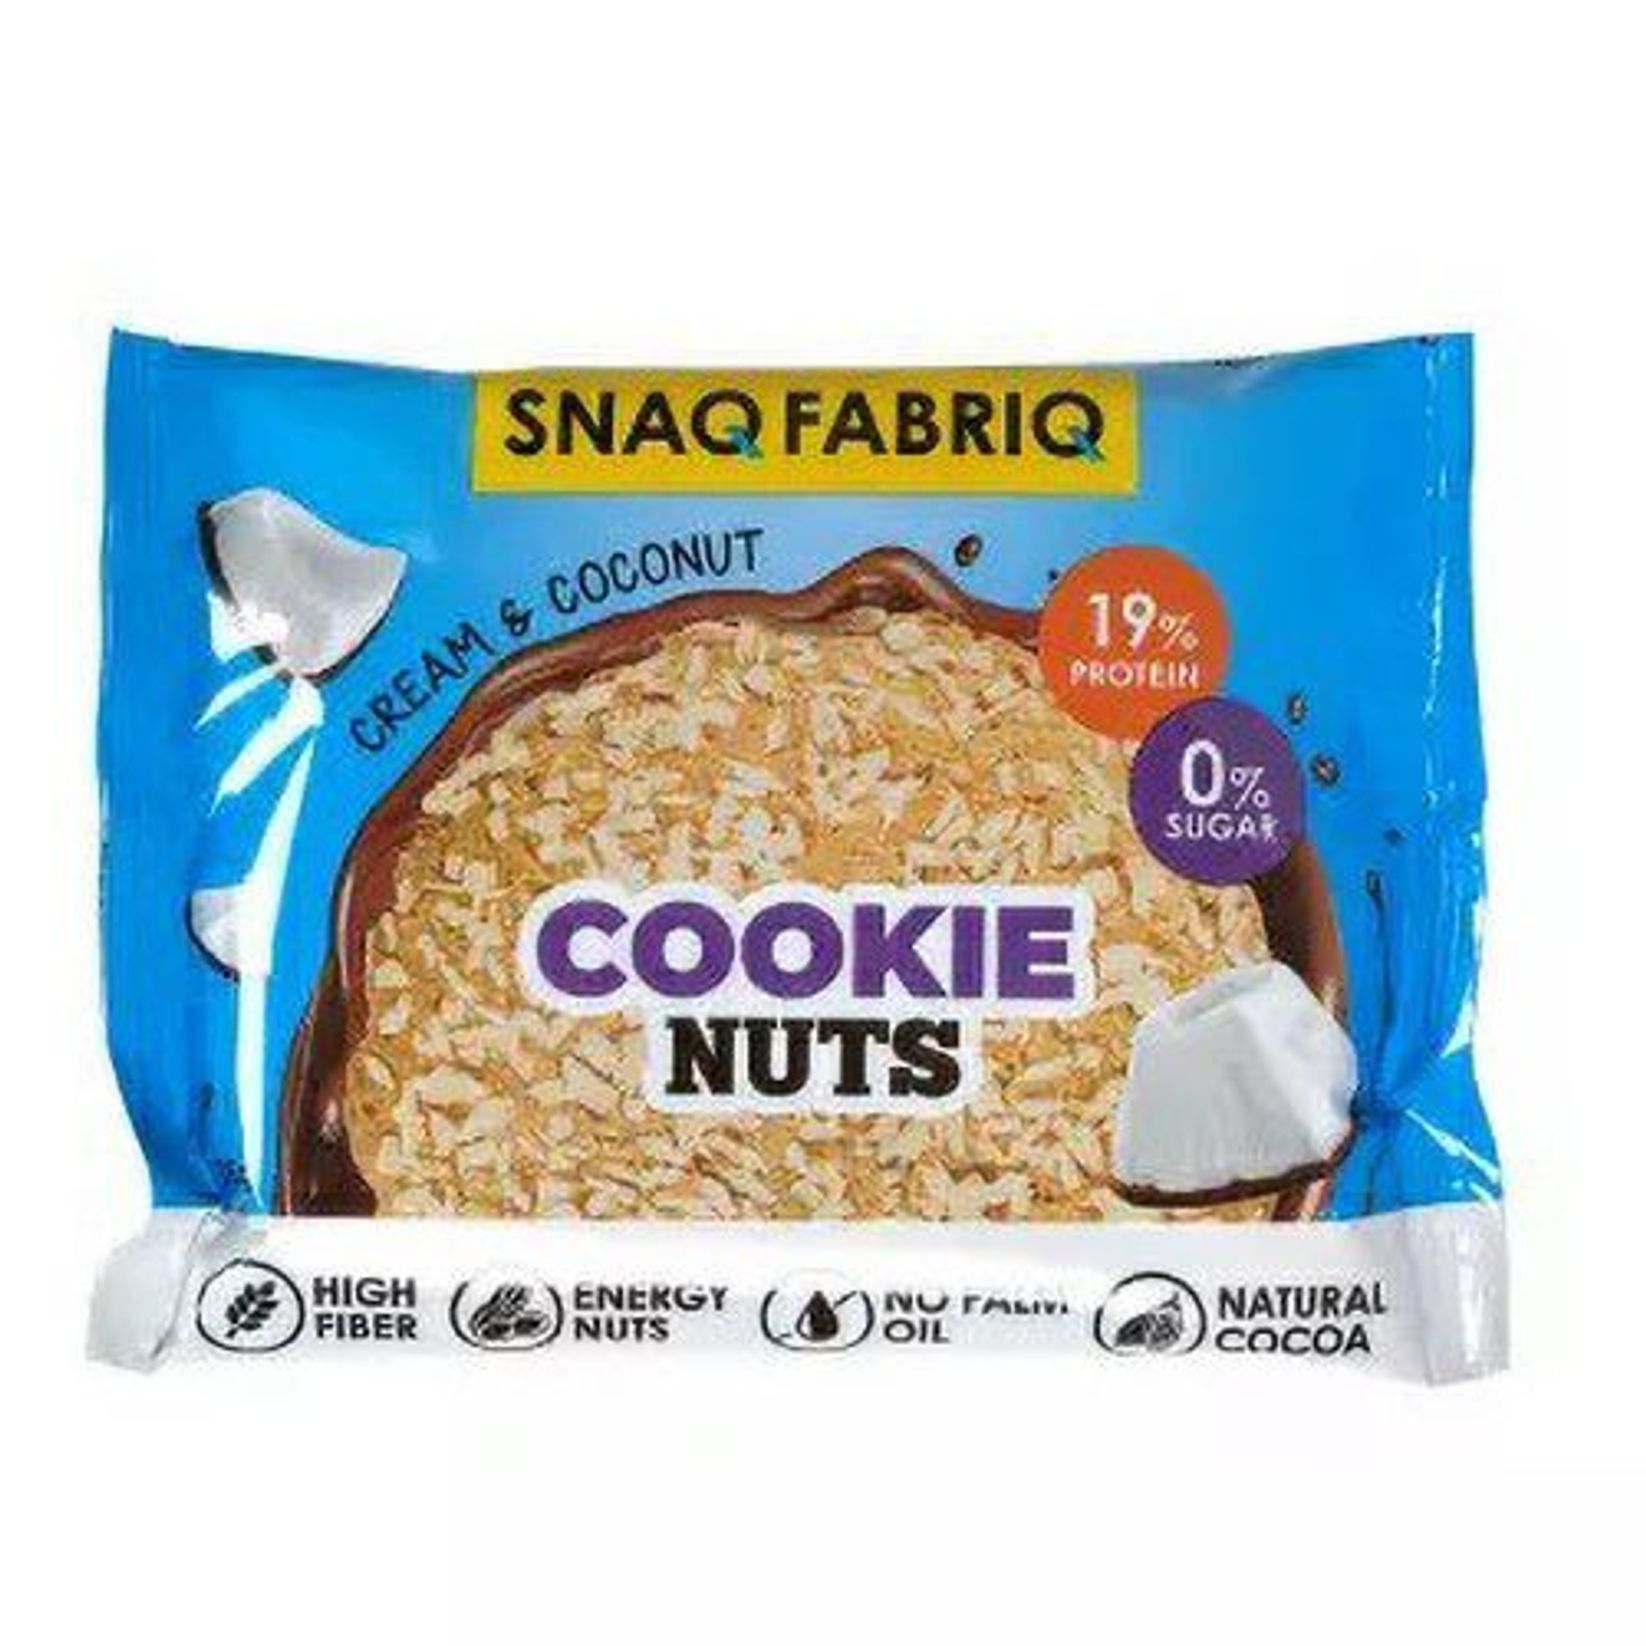 Печенье 35. Протеиновое печенье. Snaq Fabriq печенье cookie Nuts. Snaq Fabriq. Snaq Fabriq. Cookie Nuts - 35 г.